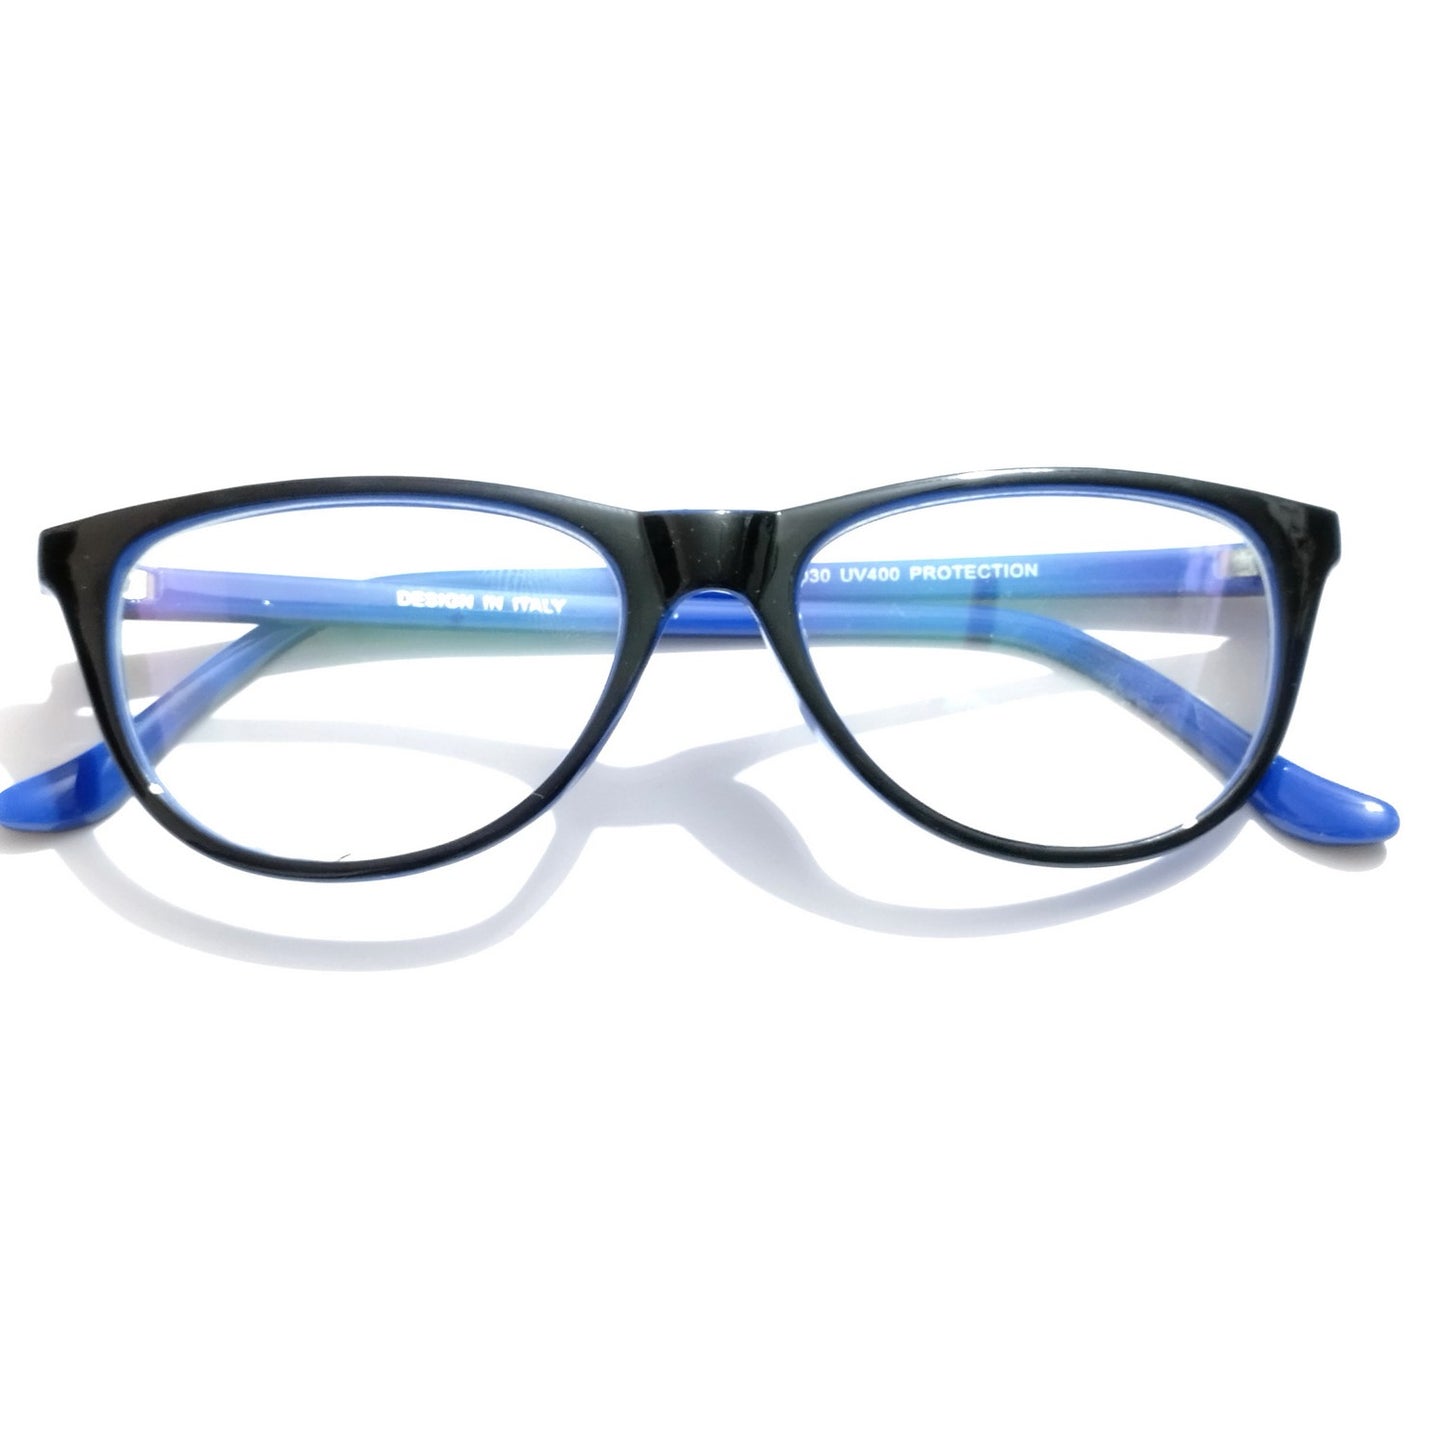 Black Front Blue Side Cat Eye Glasses for Women